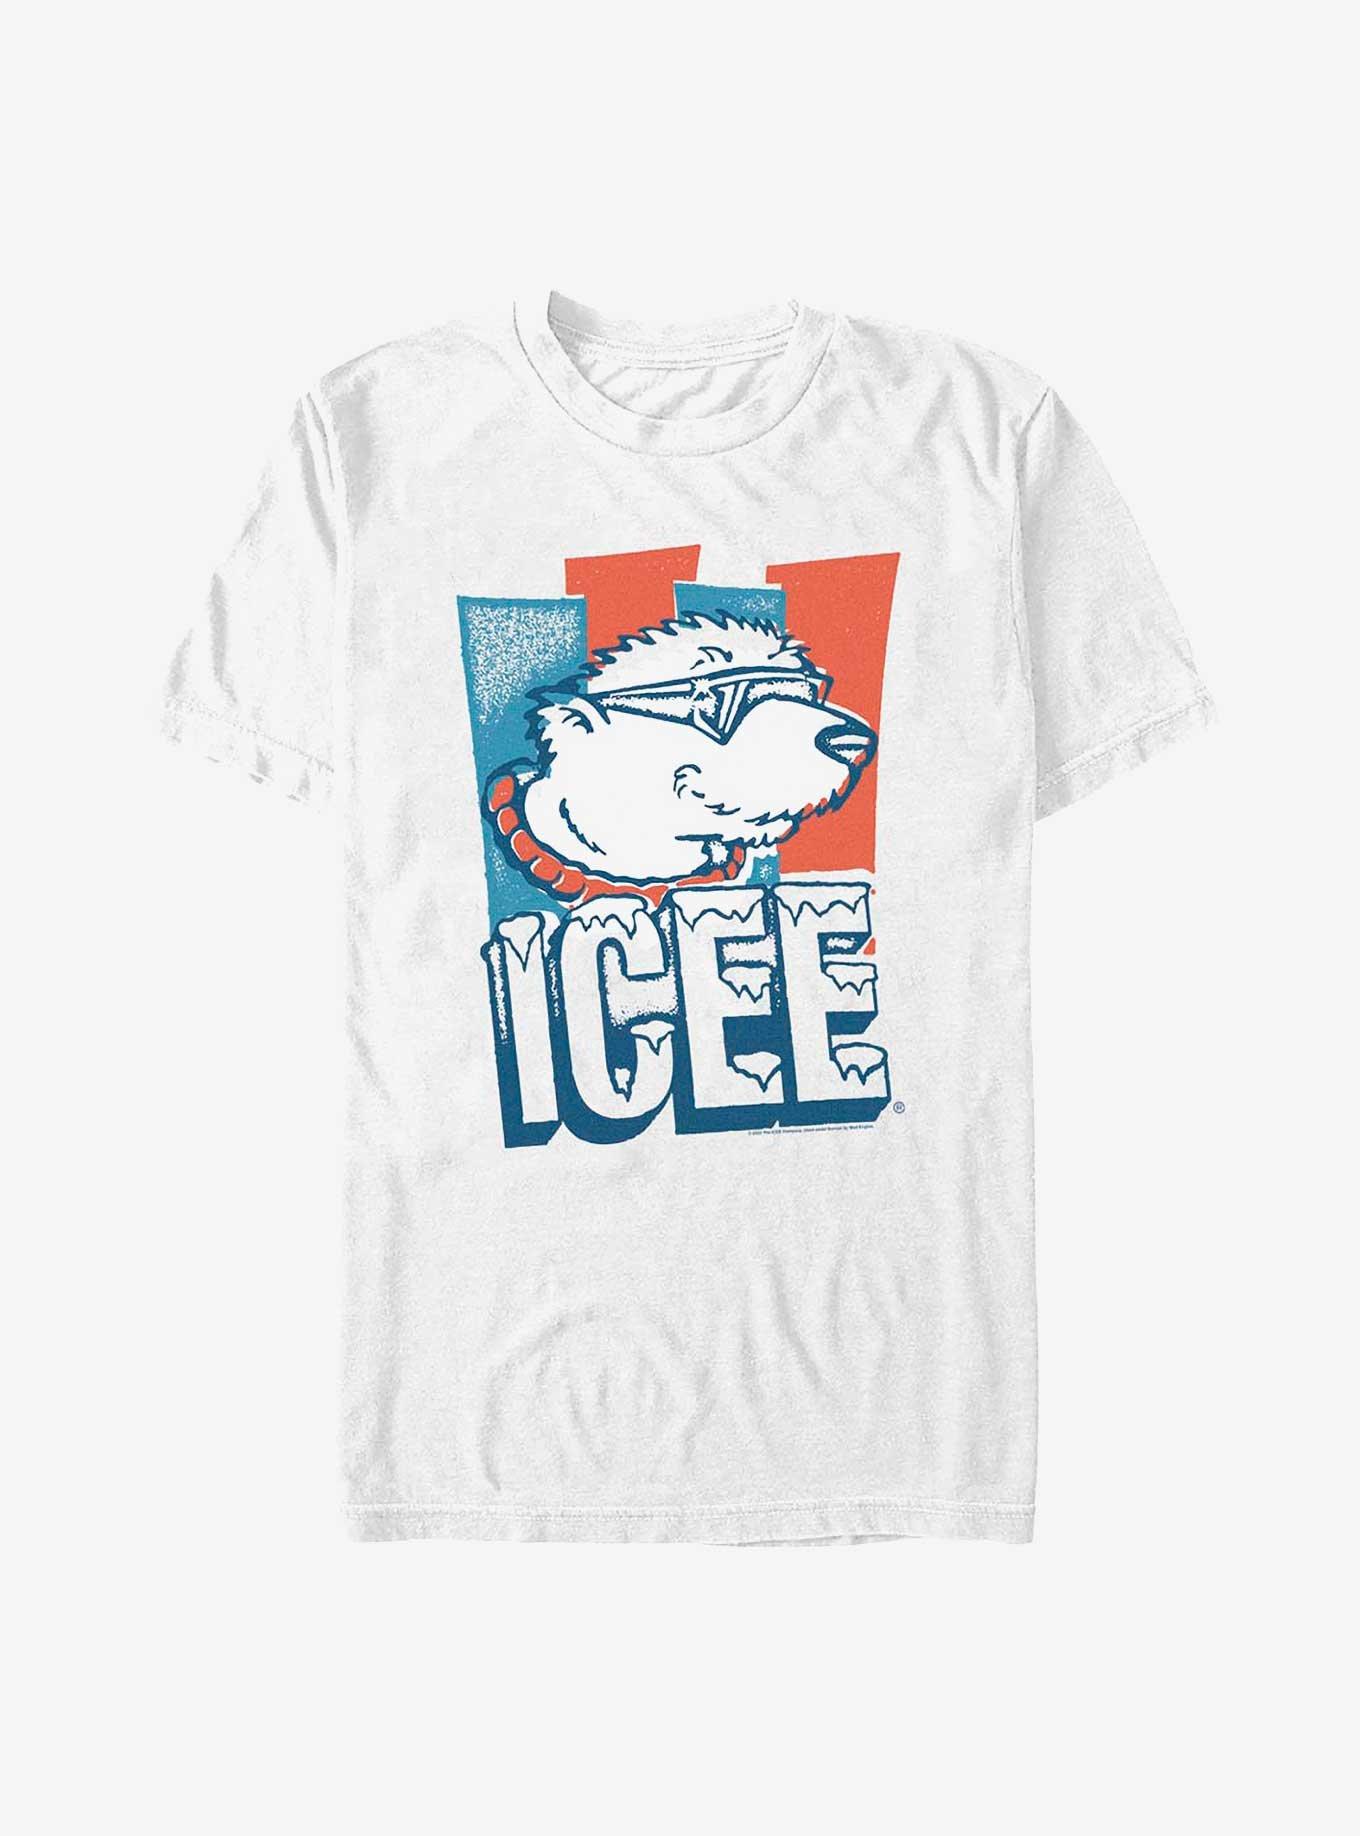 Icee  Man Cool-1  T-Shirt, WHITE, hi-res